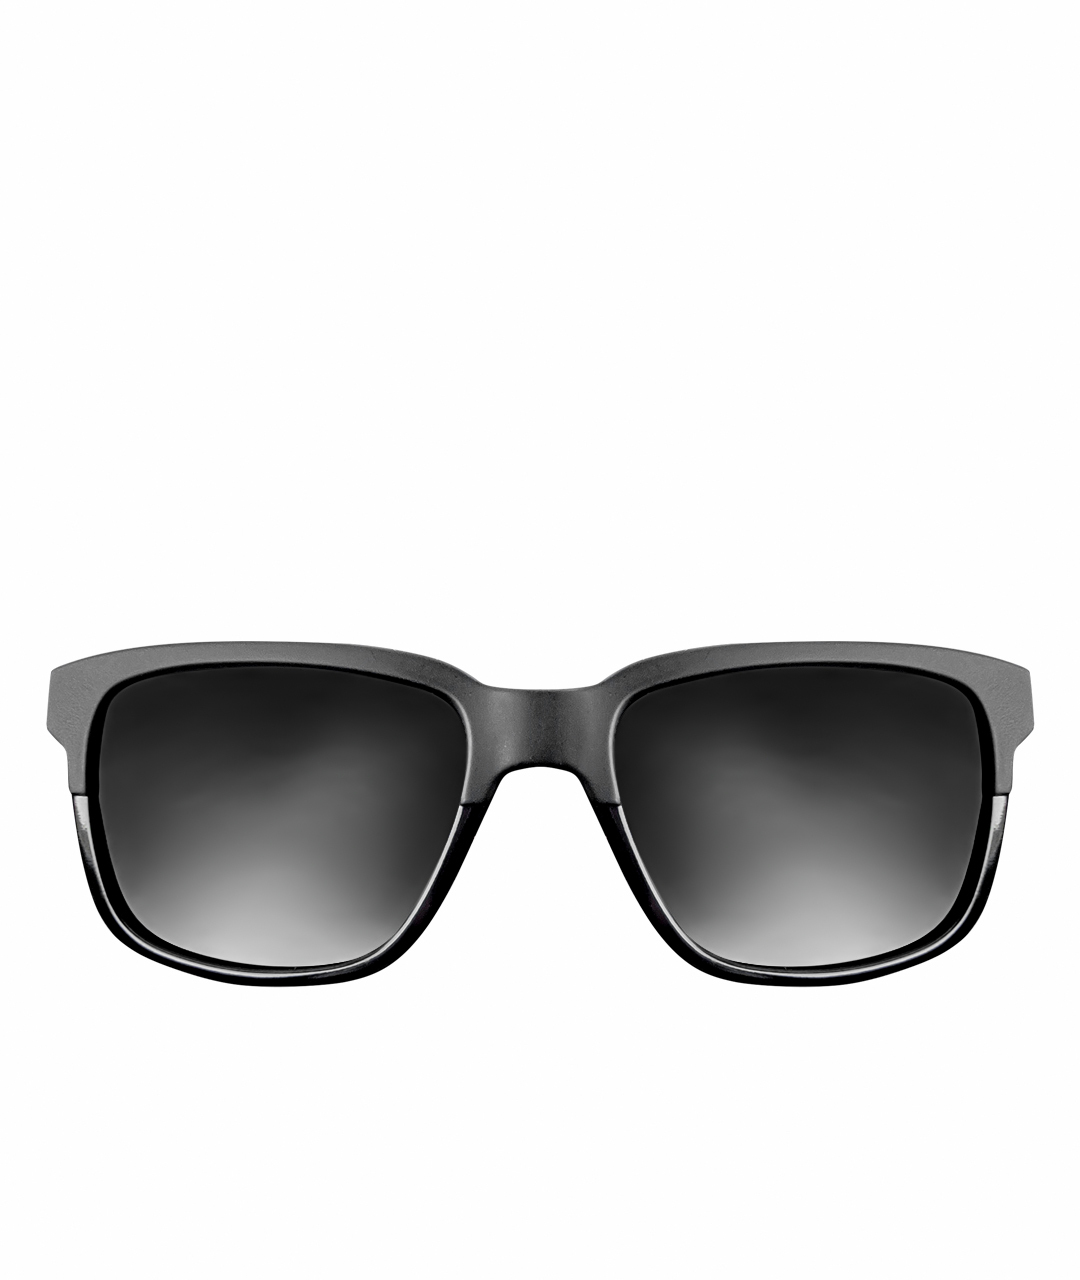 EMPORIO ARMANI Антрацитовые пластиковые солнцезащитные очки, фото 1